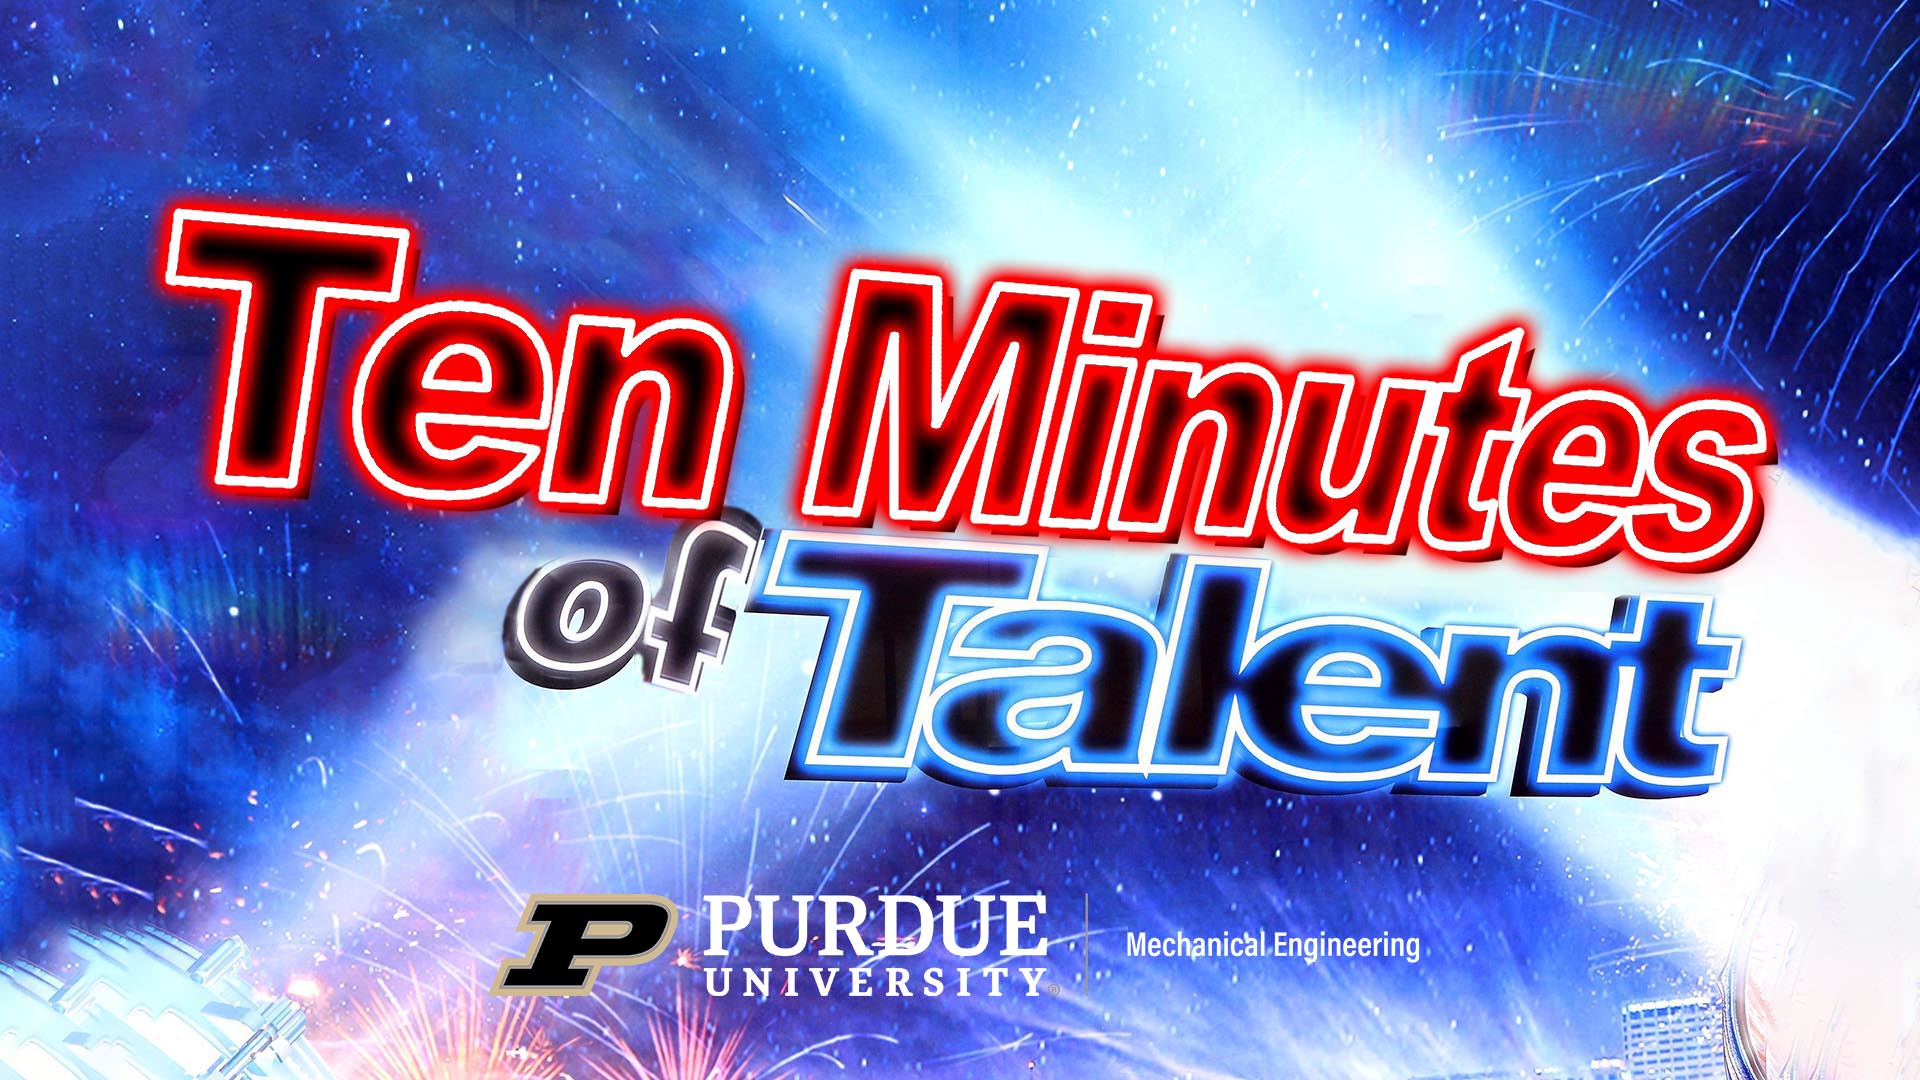 Ten Minutes of Talent